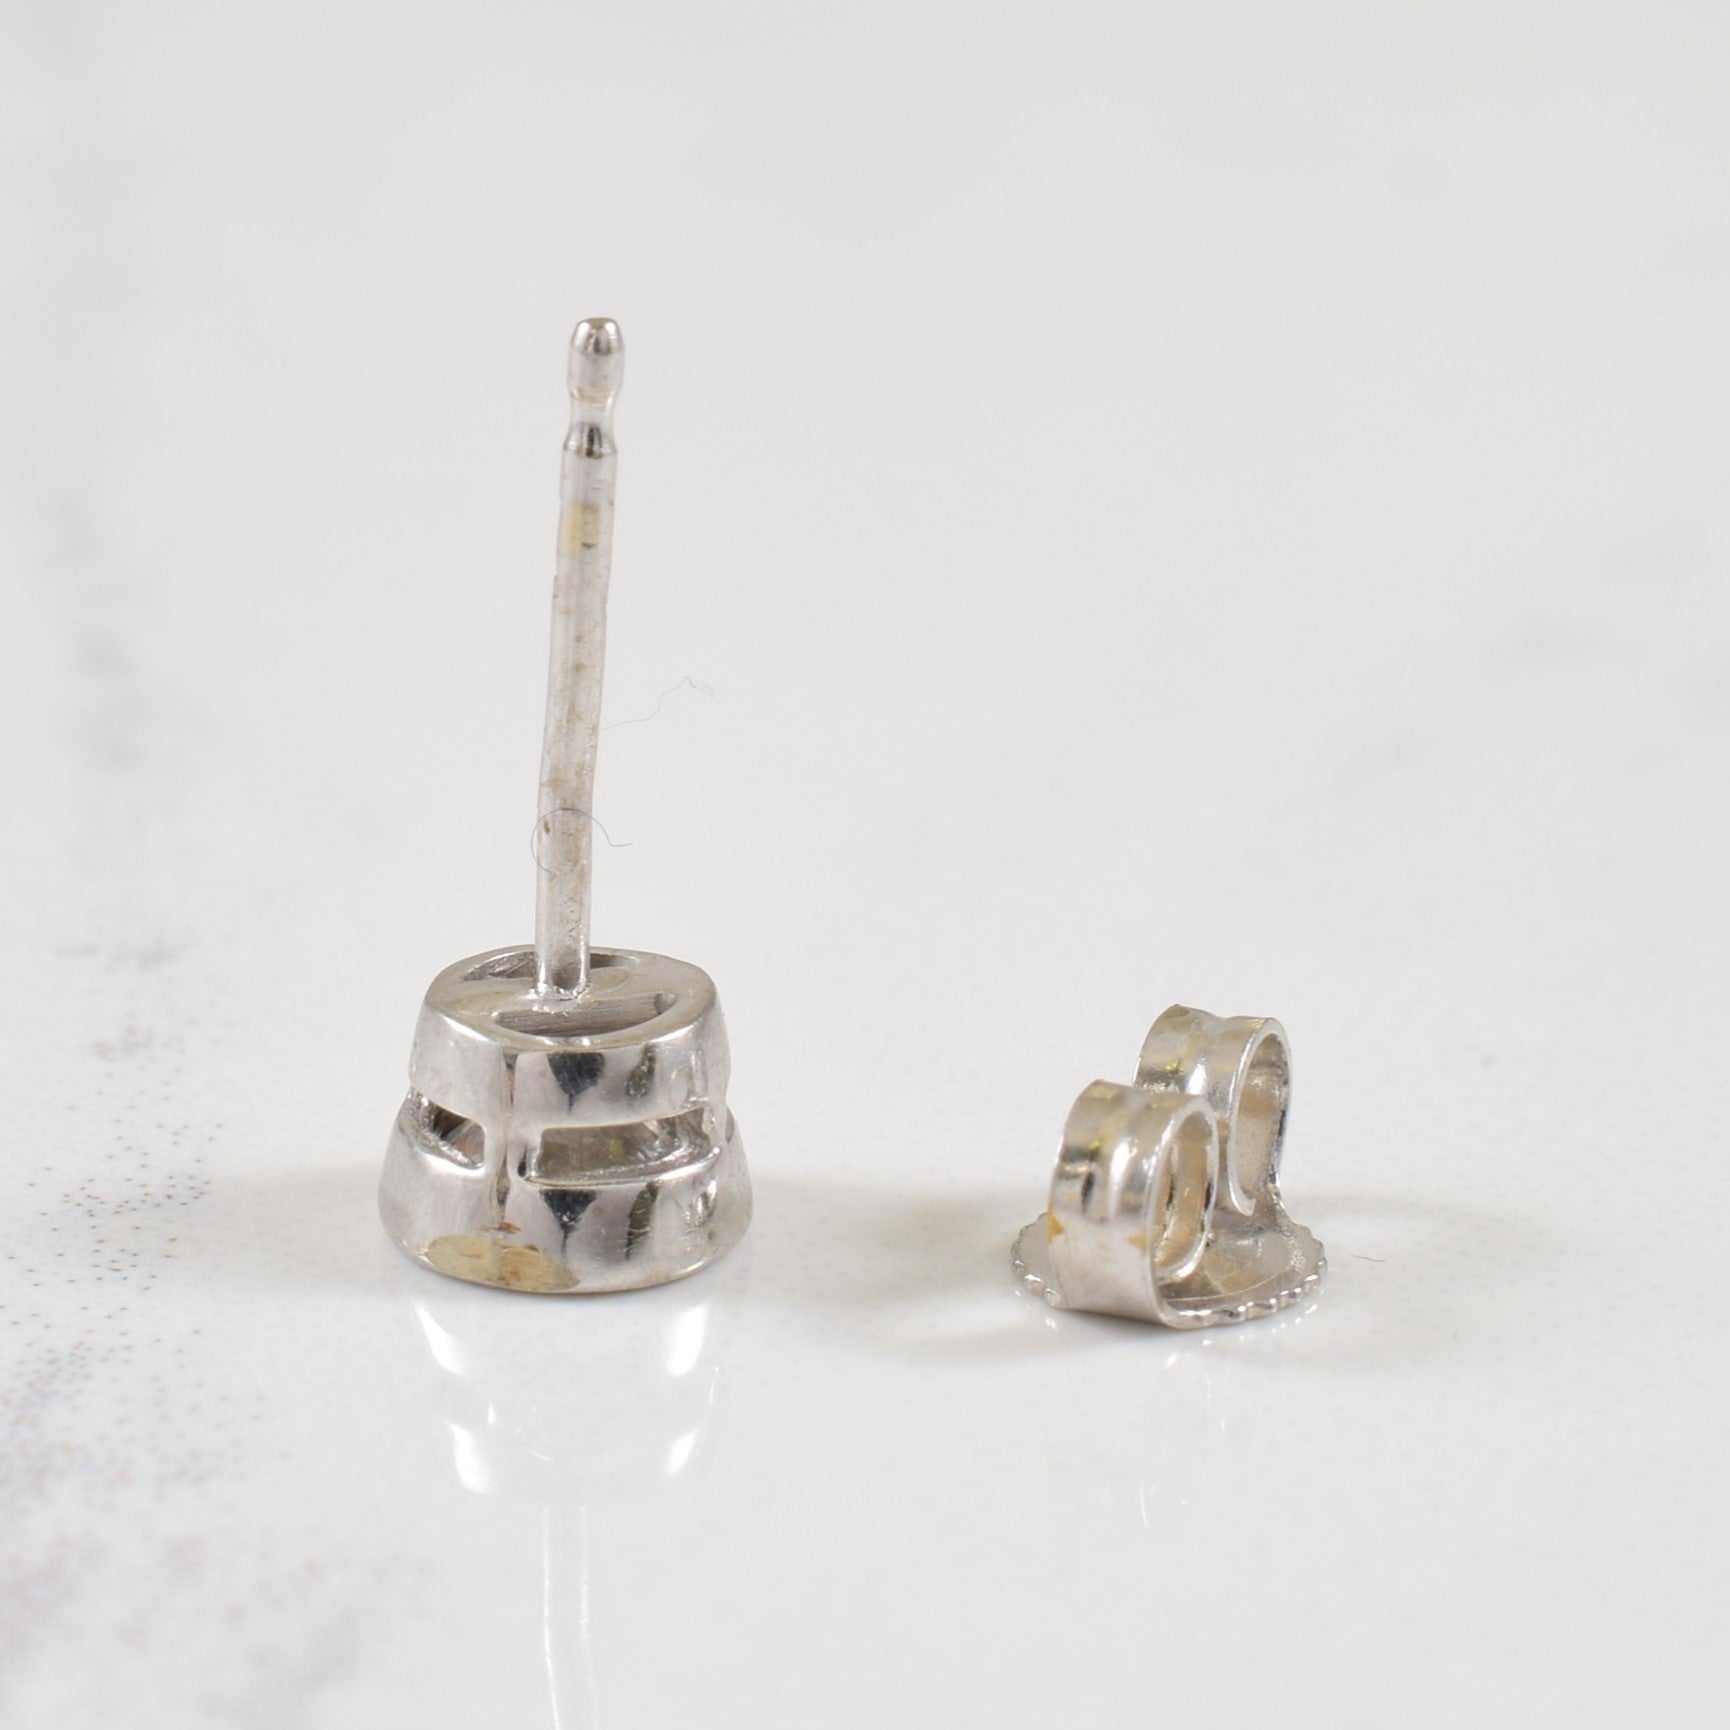 Bezel Set Diamond Stud Earrings | 0.54ctw |